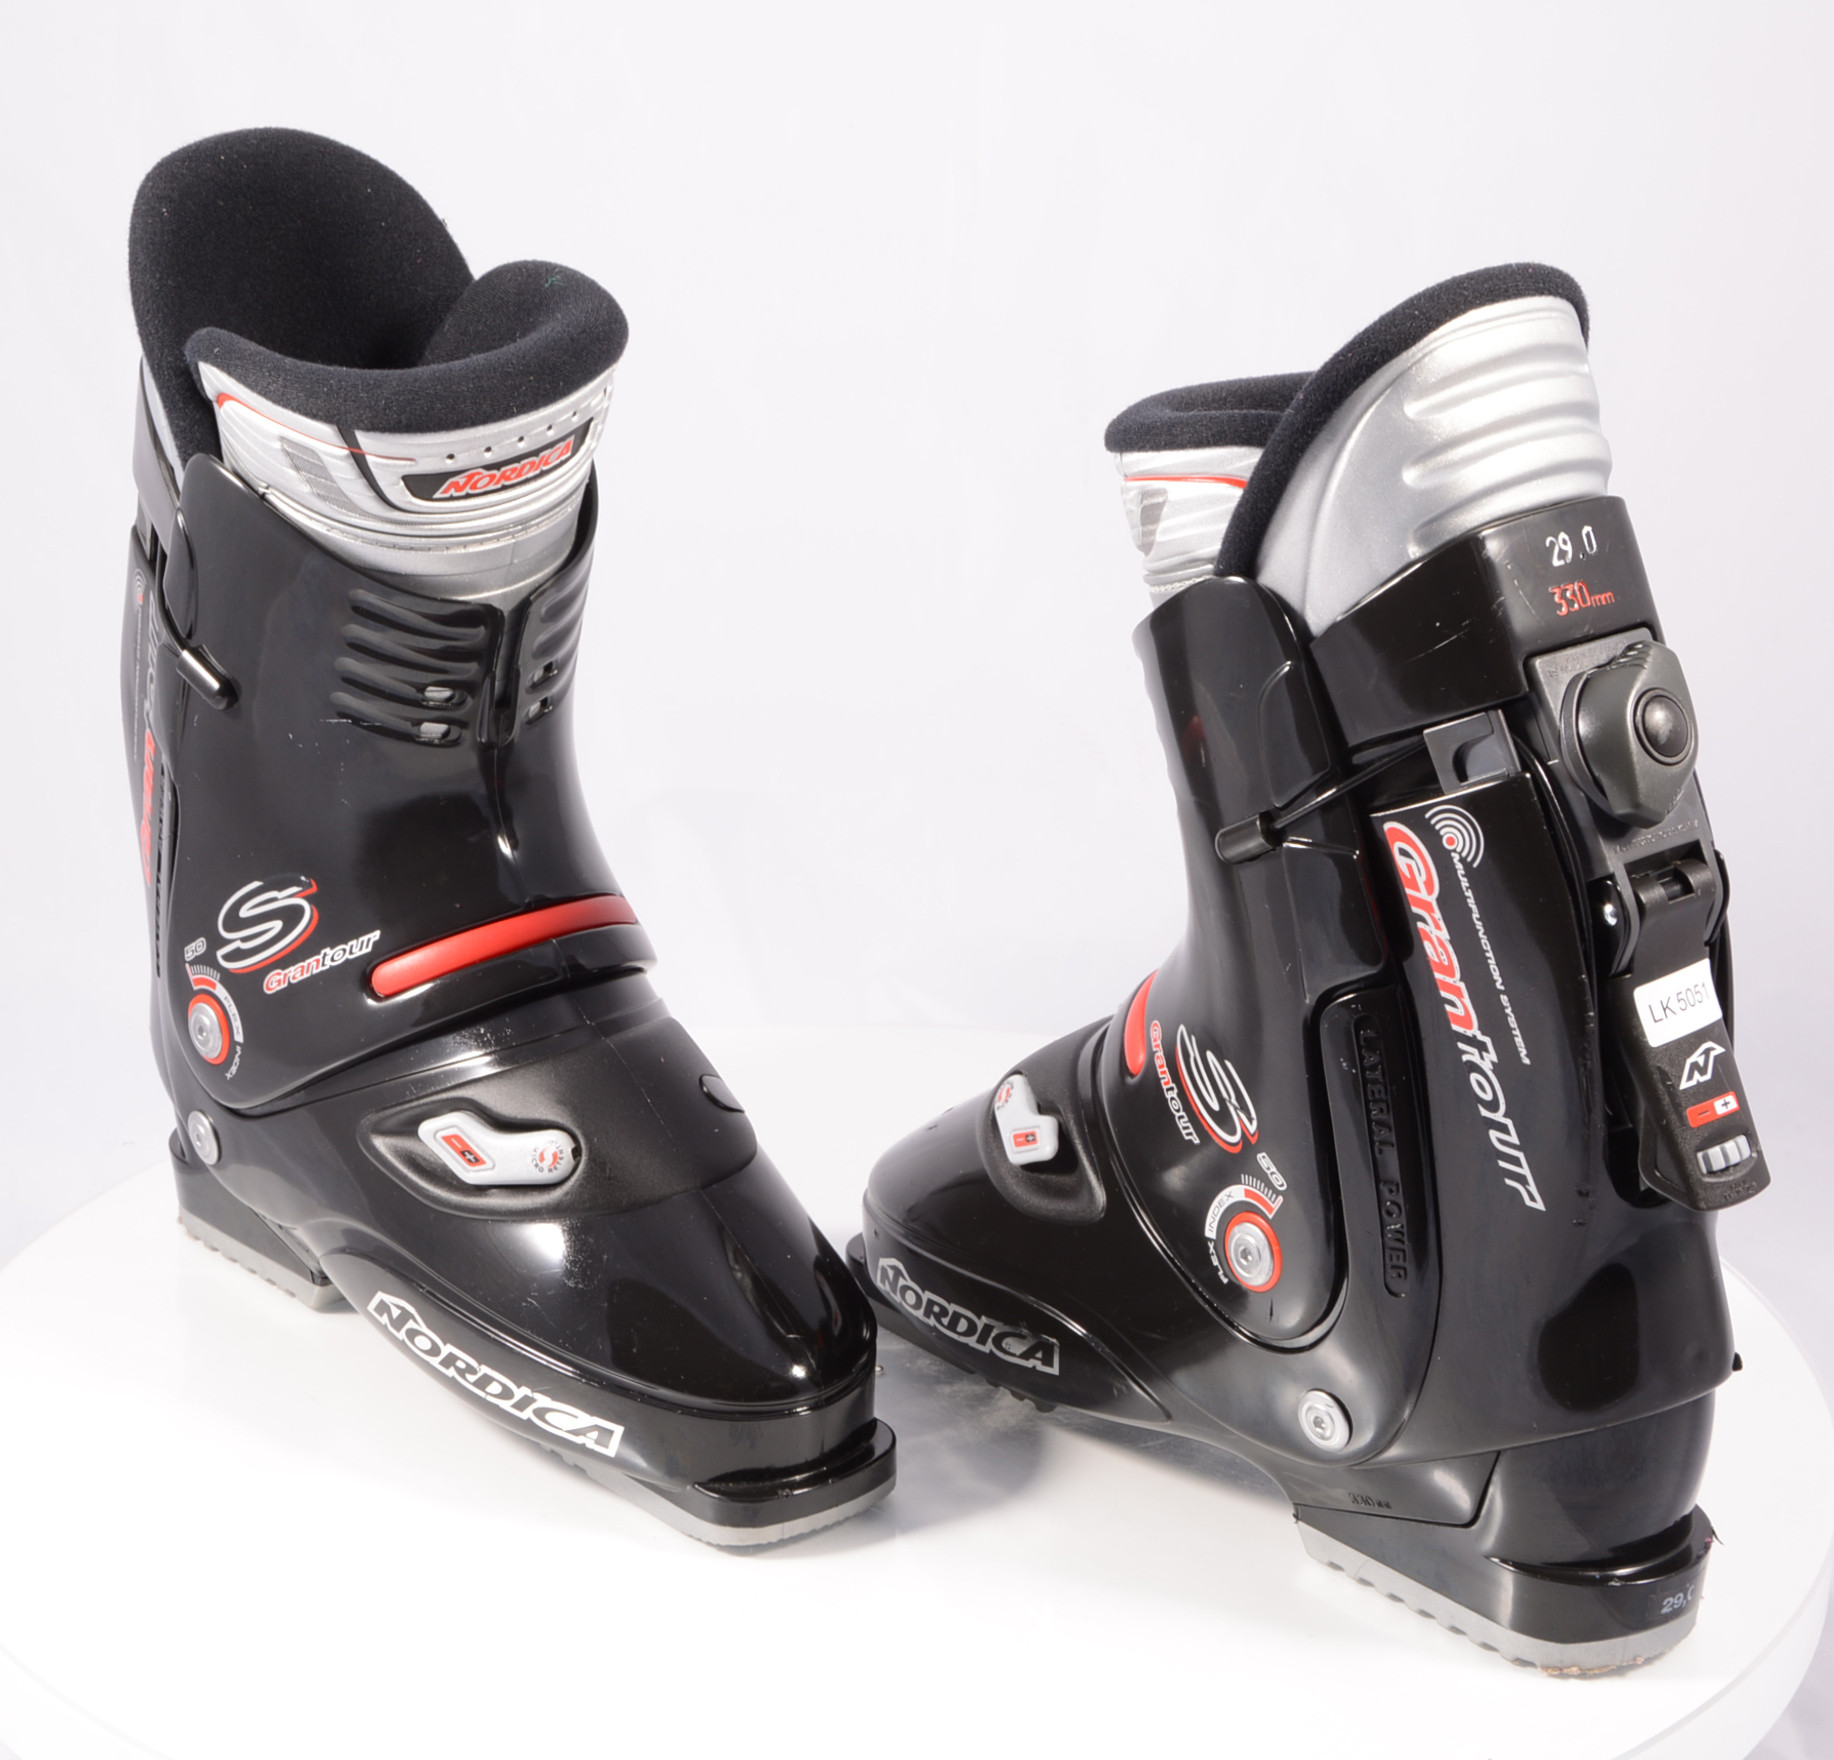 sílaba recoger para mi botas esquí NORDICA GRANTOUR S 2020, black, FLEX capacitor, Multifunction  system, SKI/WALK ( condición TOP ) - Mardosport.es